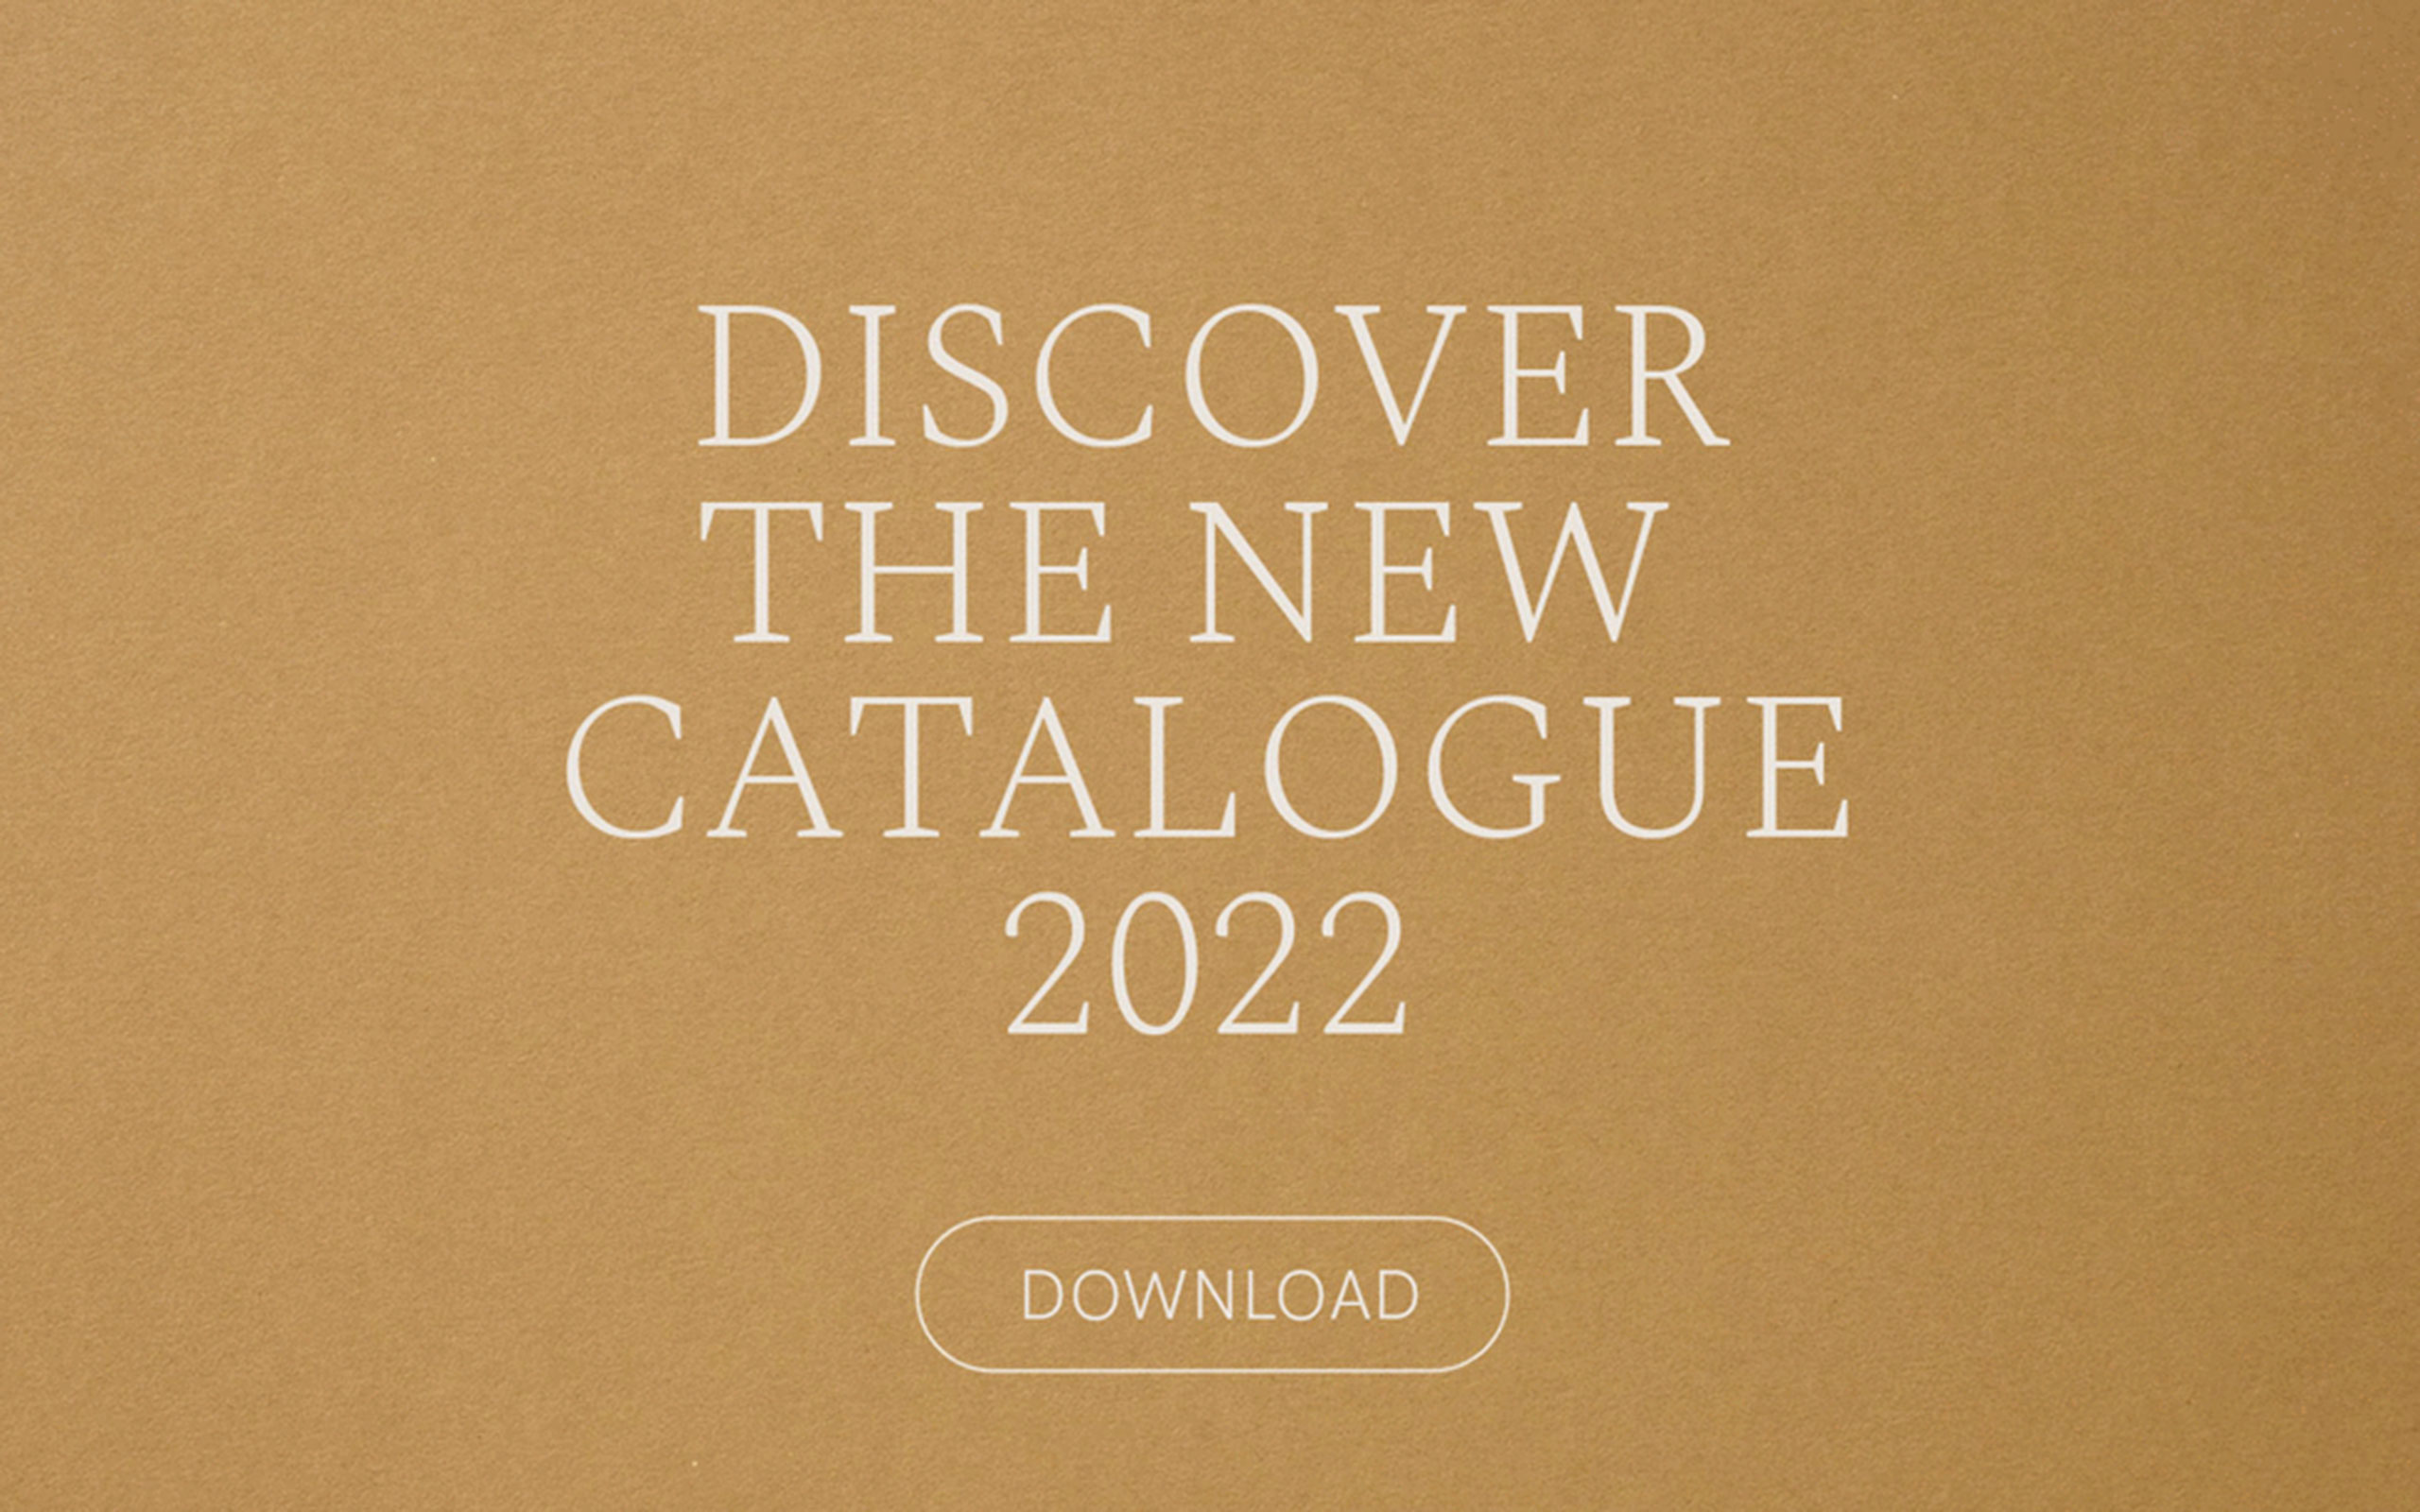 NEW-CATALOGUE-2022